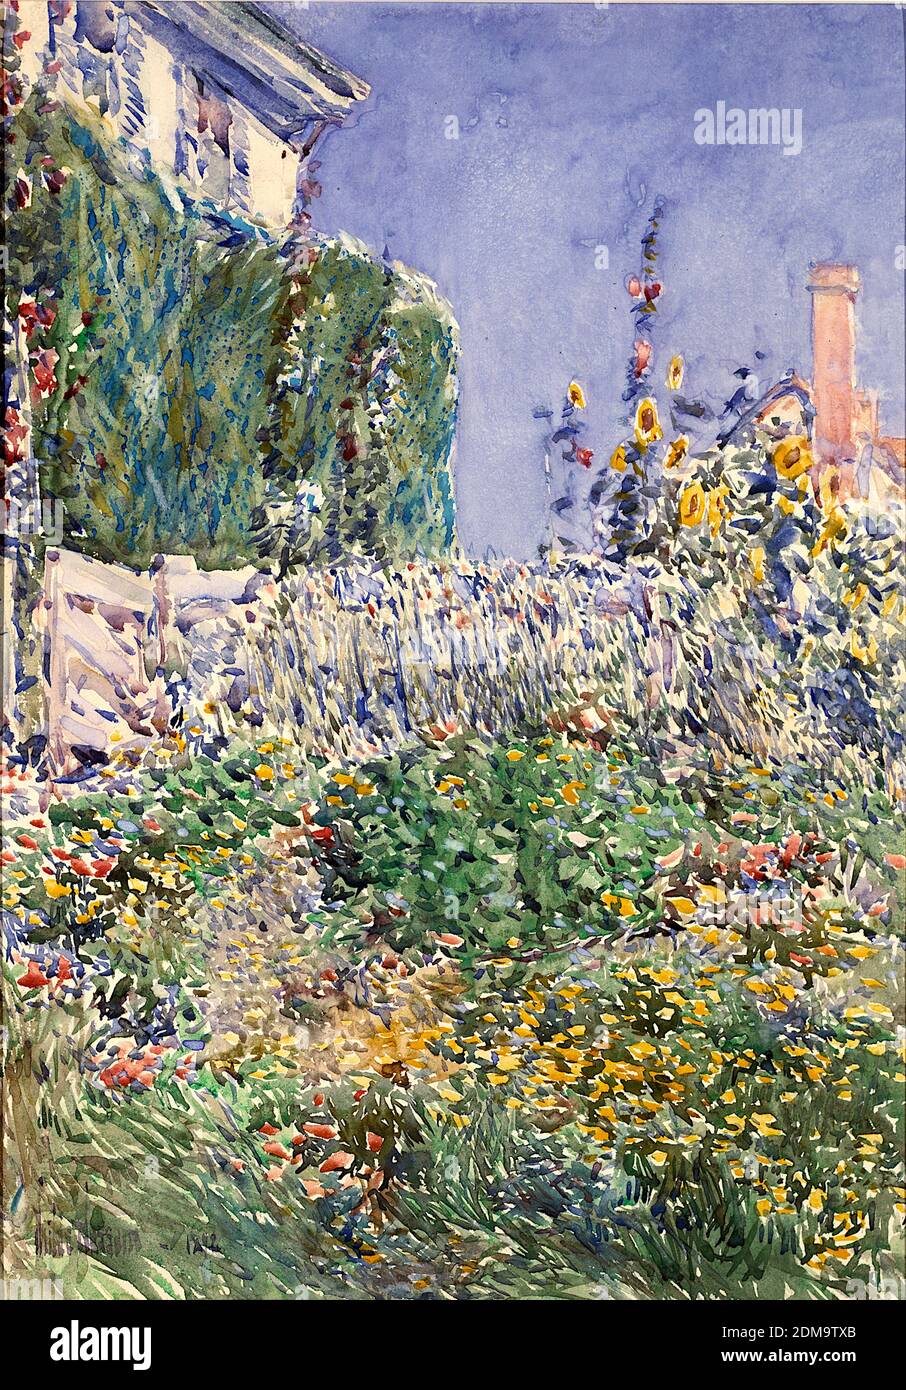 Thaxters Garden 1892 American Impressionist Painting by Childe Hassam - Risoluzione e qualità dell'immagine molto elevate Foto Stock